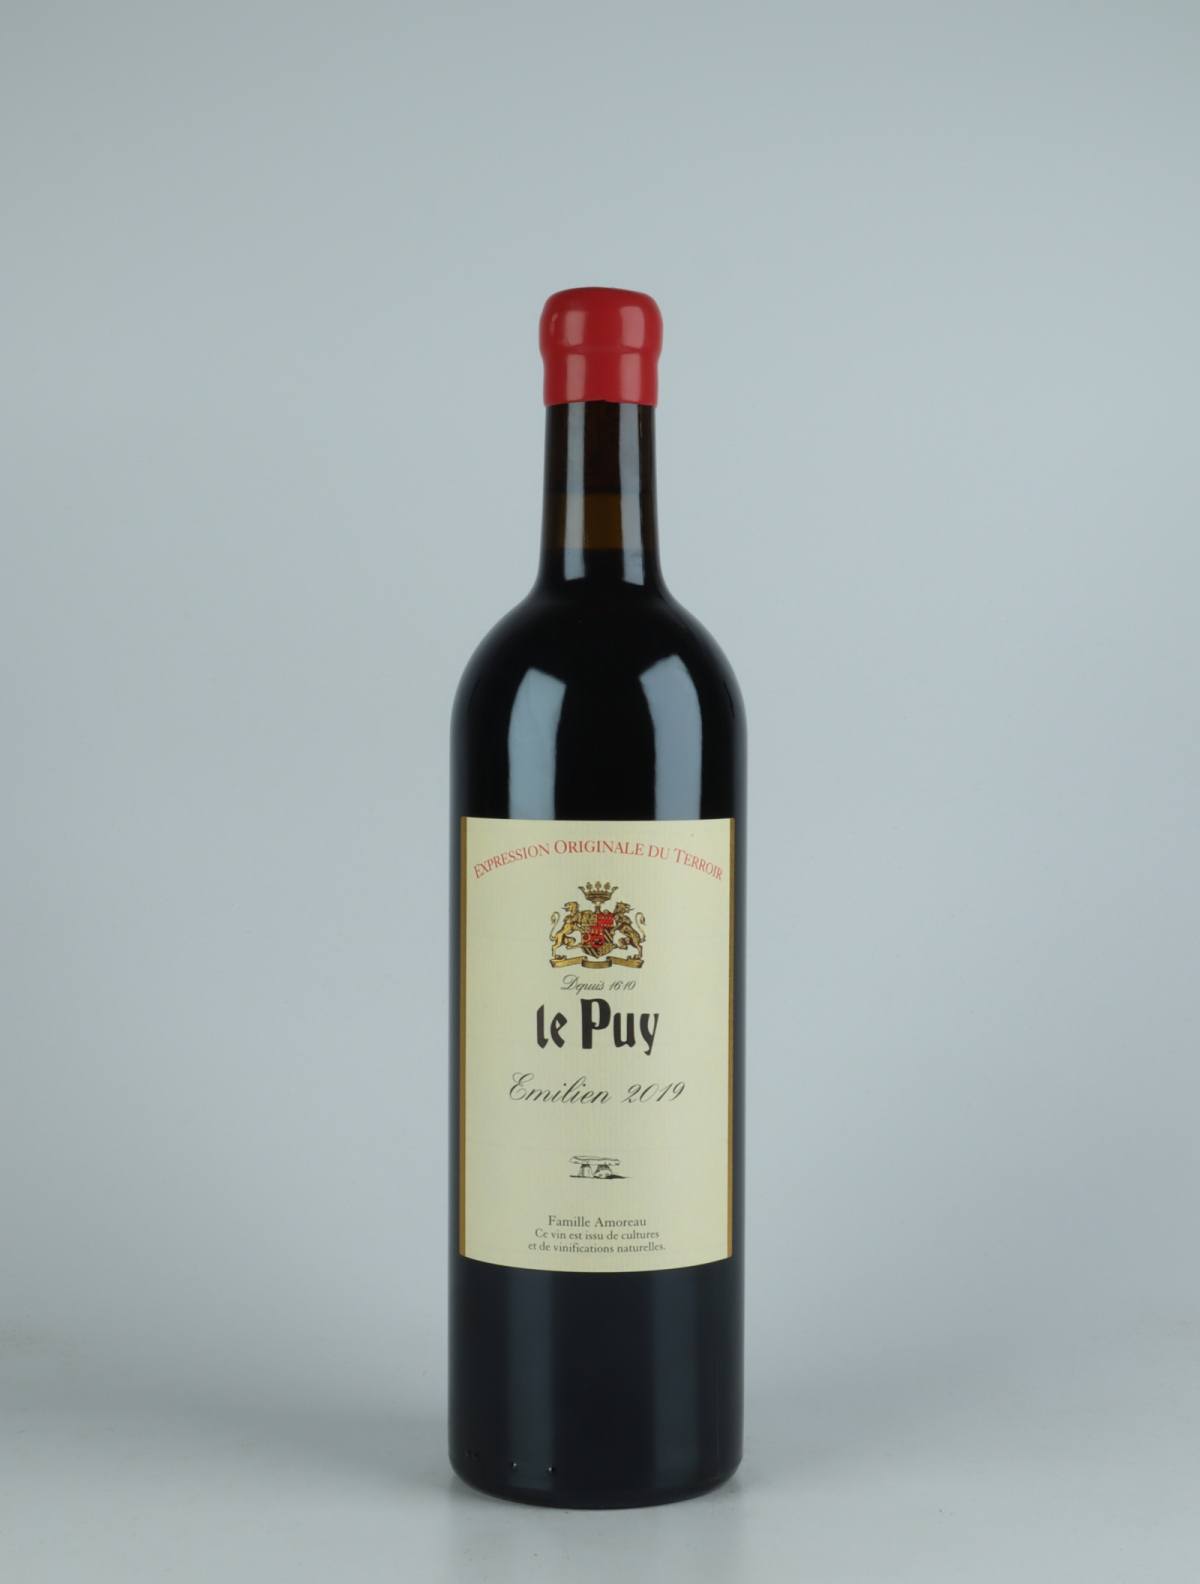 A bottle 2019 Emilien Red wine from , Bordeaux in France